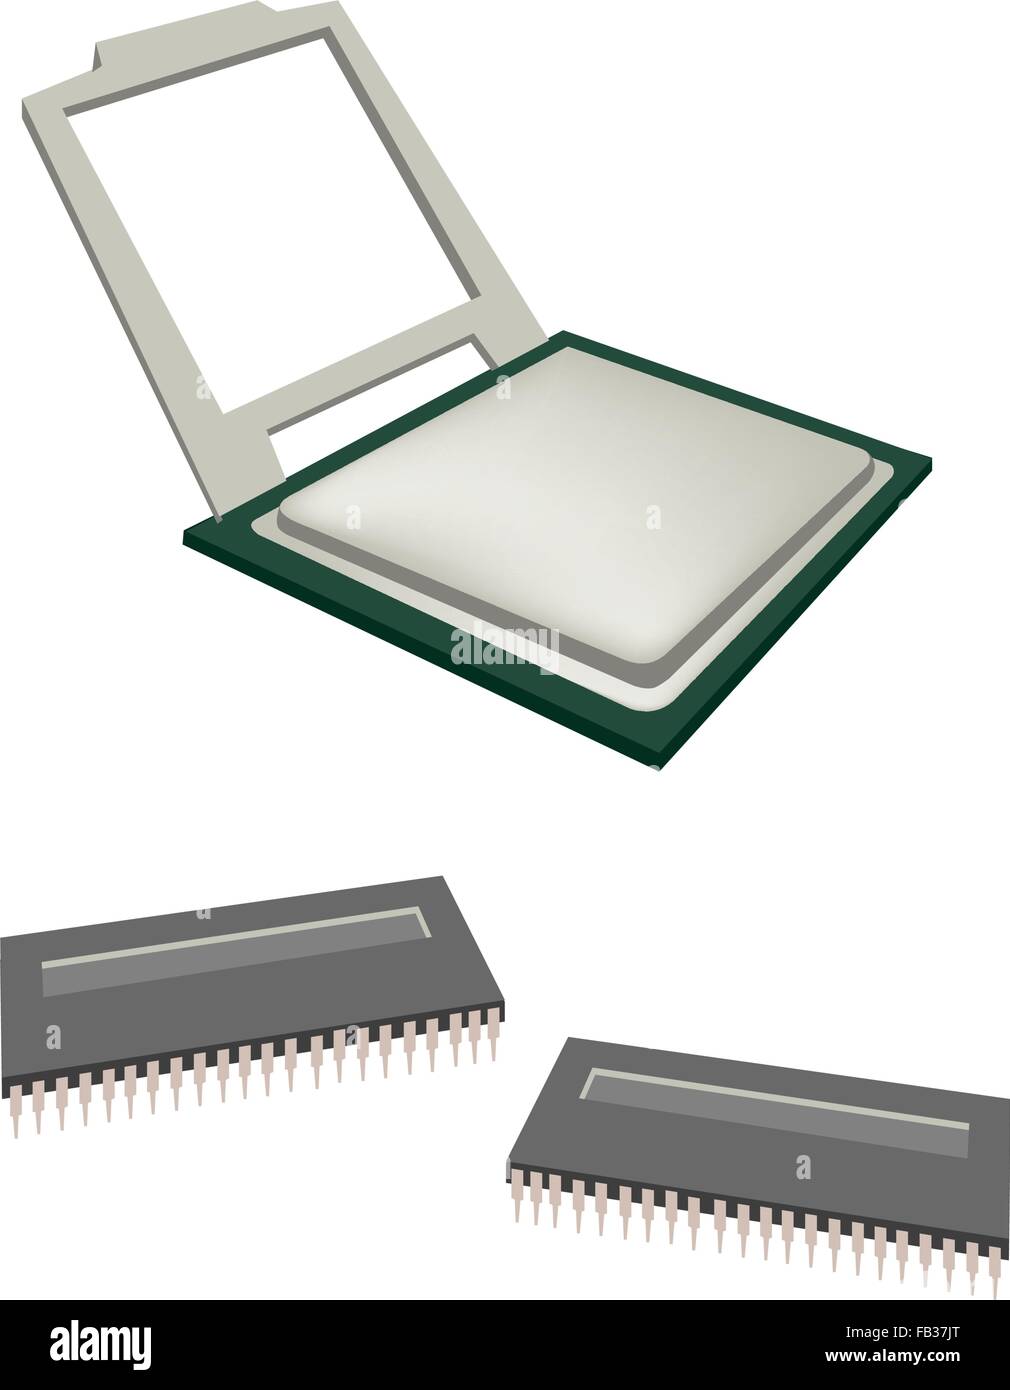 Informatique et technologie, Illustration de l'Unité Centrale de traitement du microprocesseur ou processeur CPU et les axes isolé sur fond blanc. Illustration de Vecteur